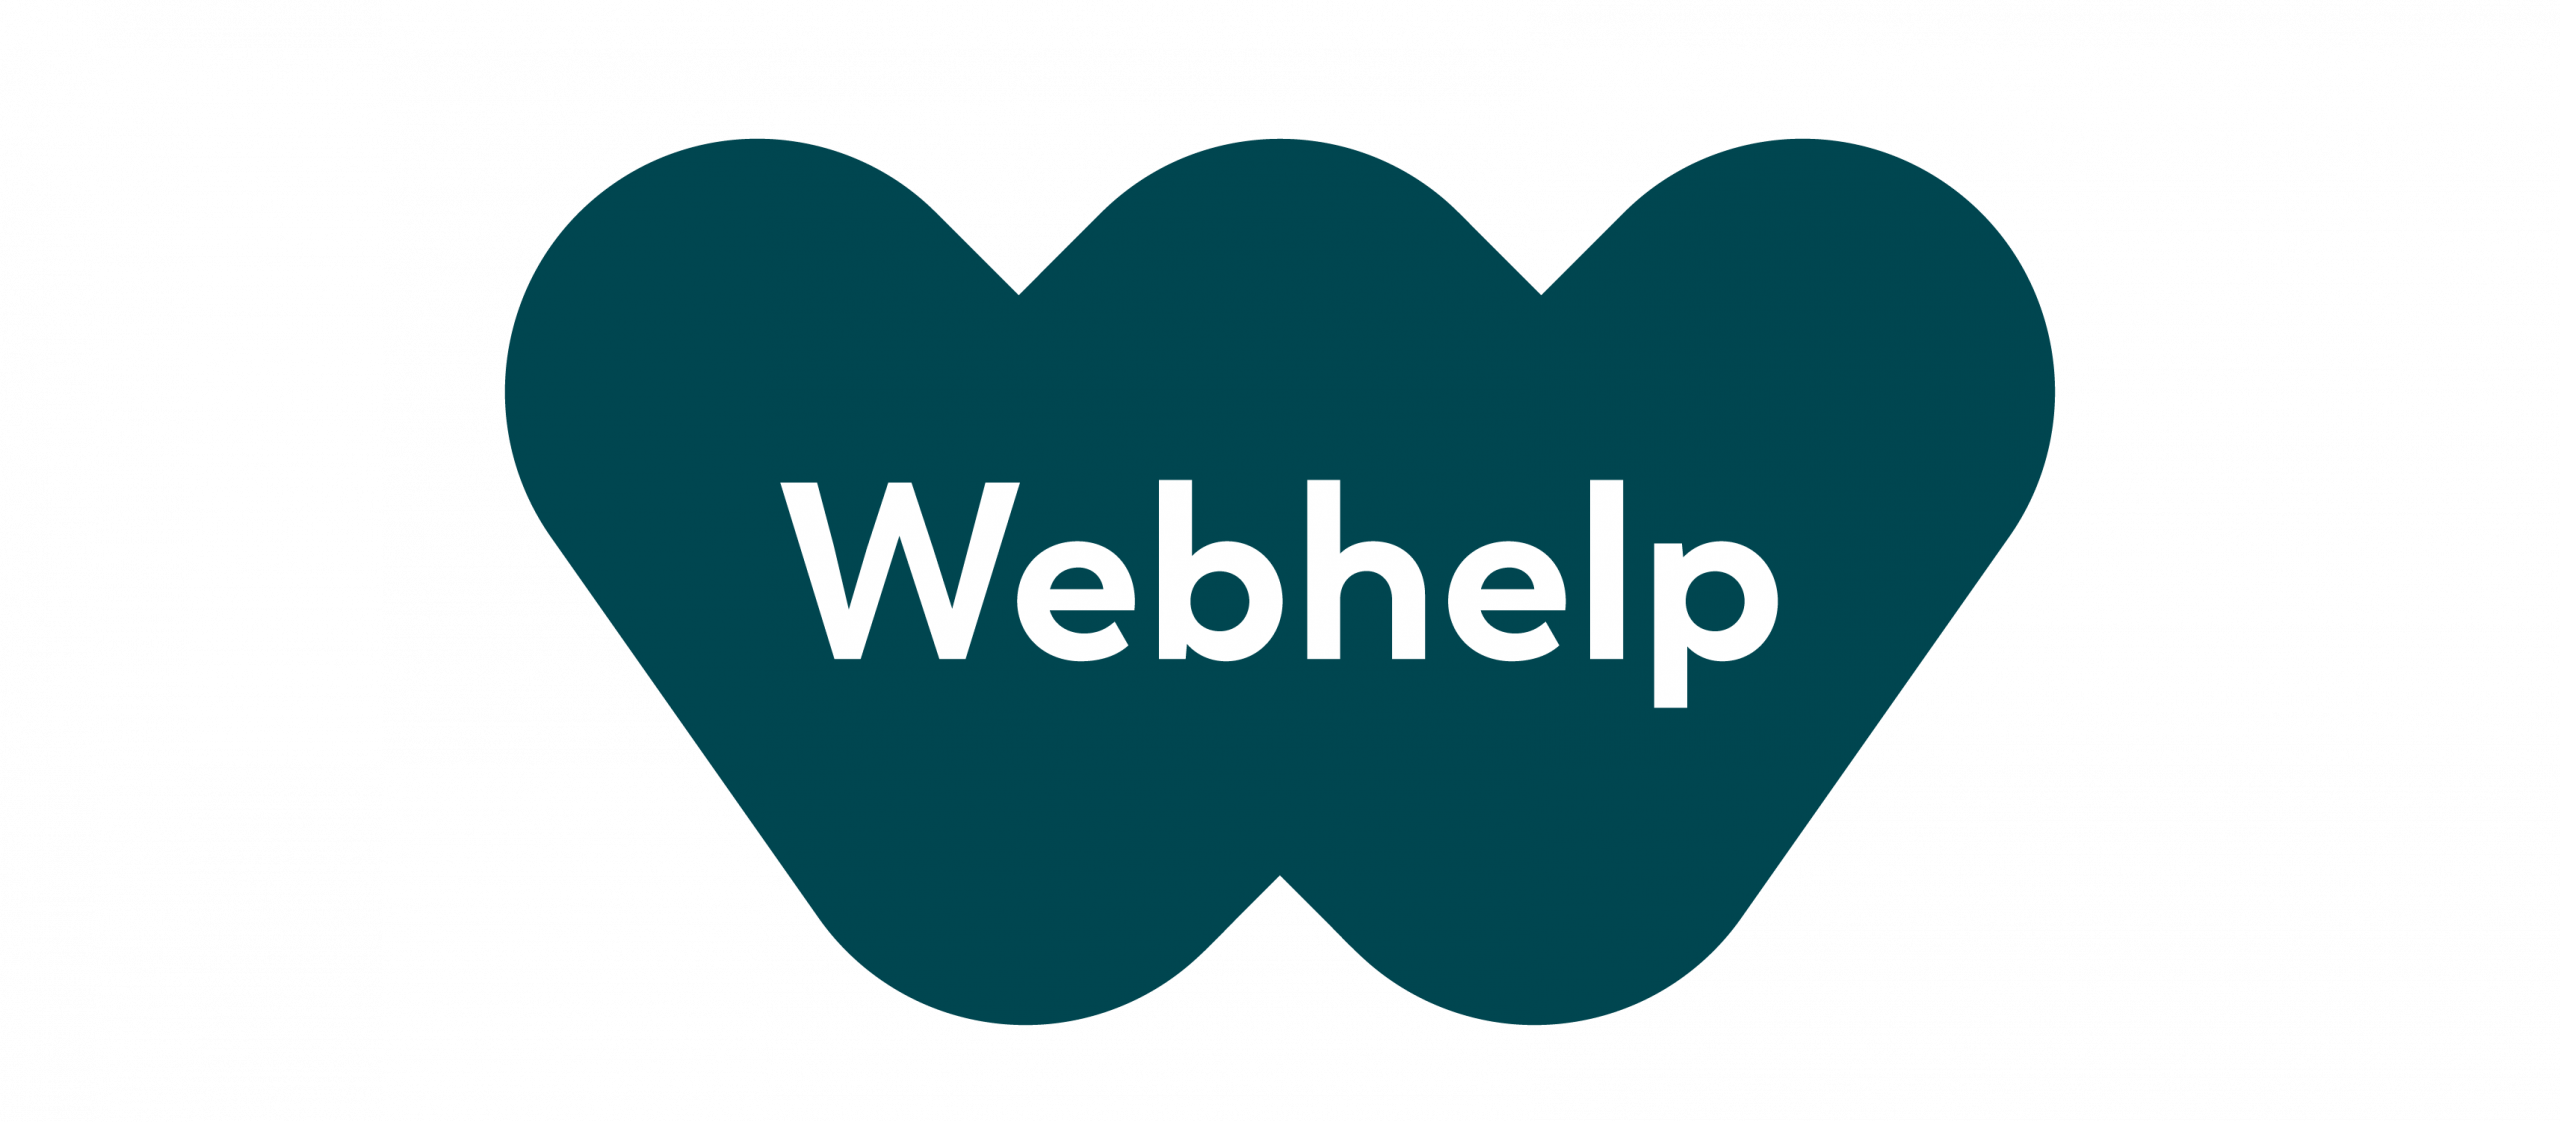 WebHelp